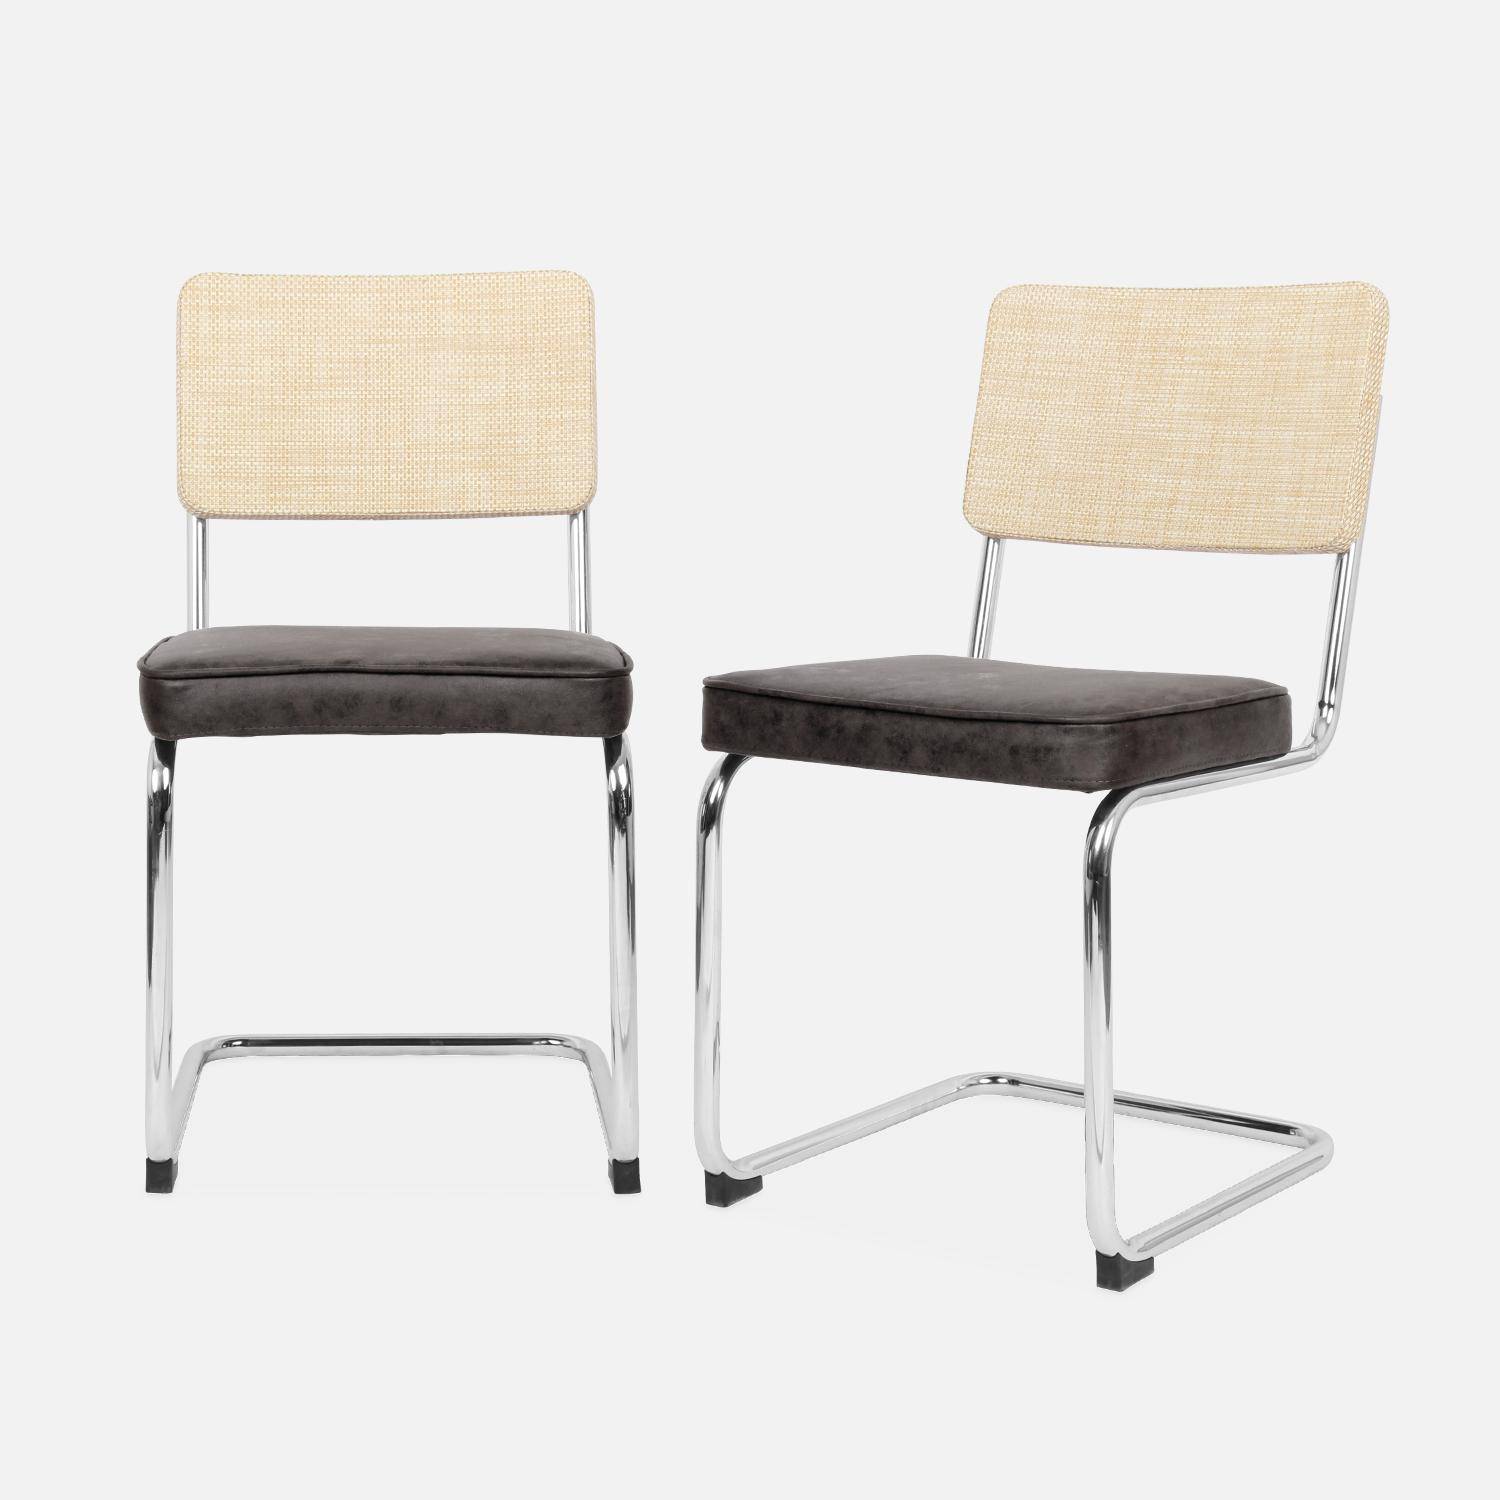 2 sillas cantilever - Maja - tela marrón oscuro y resina efecto ratán, 46 x 54,5 x 84,5cm   Photo4